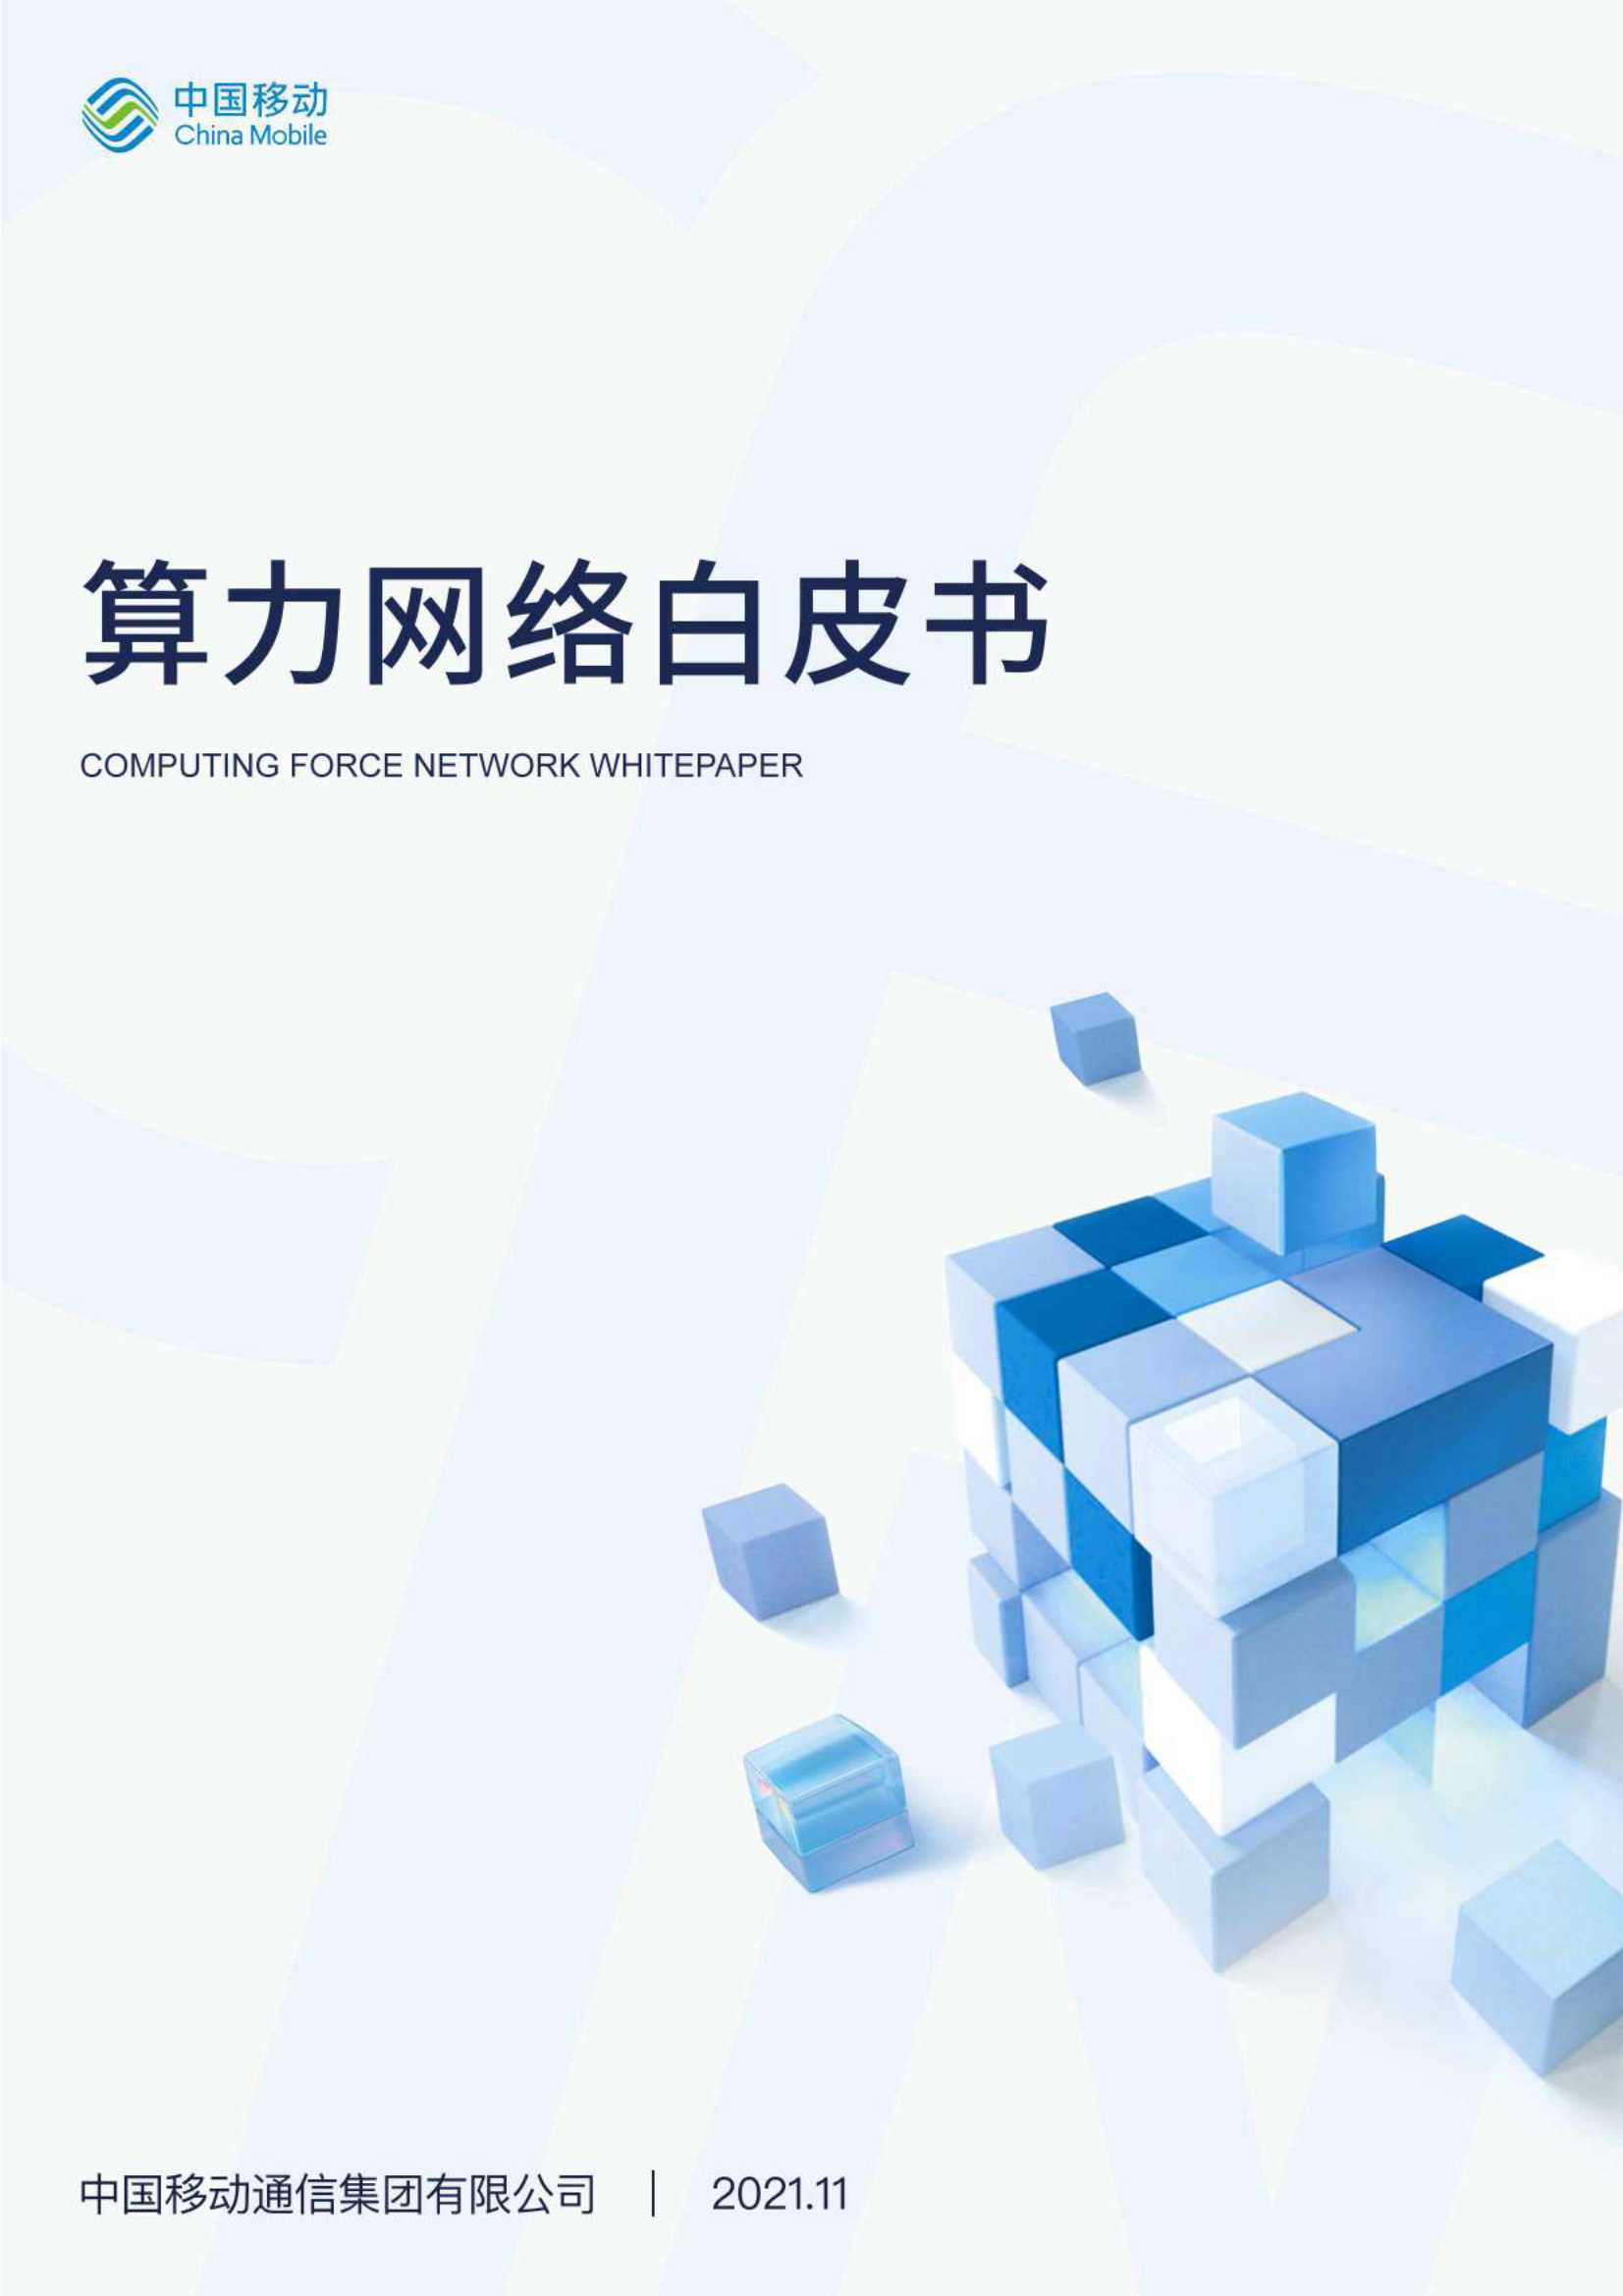 中国移动-算力网络白皮书-2021.11-36页